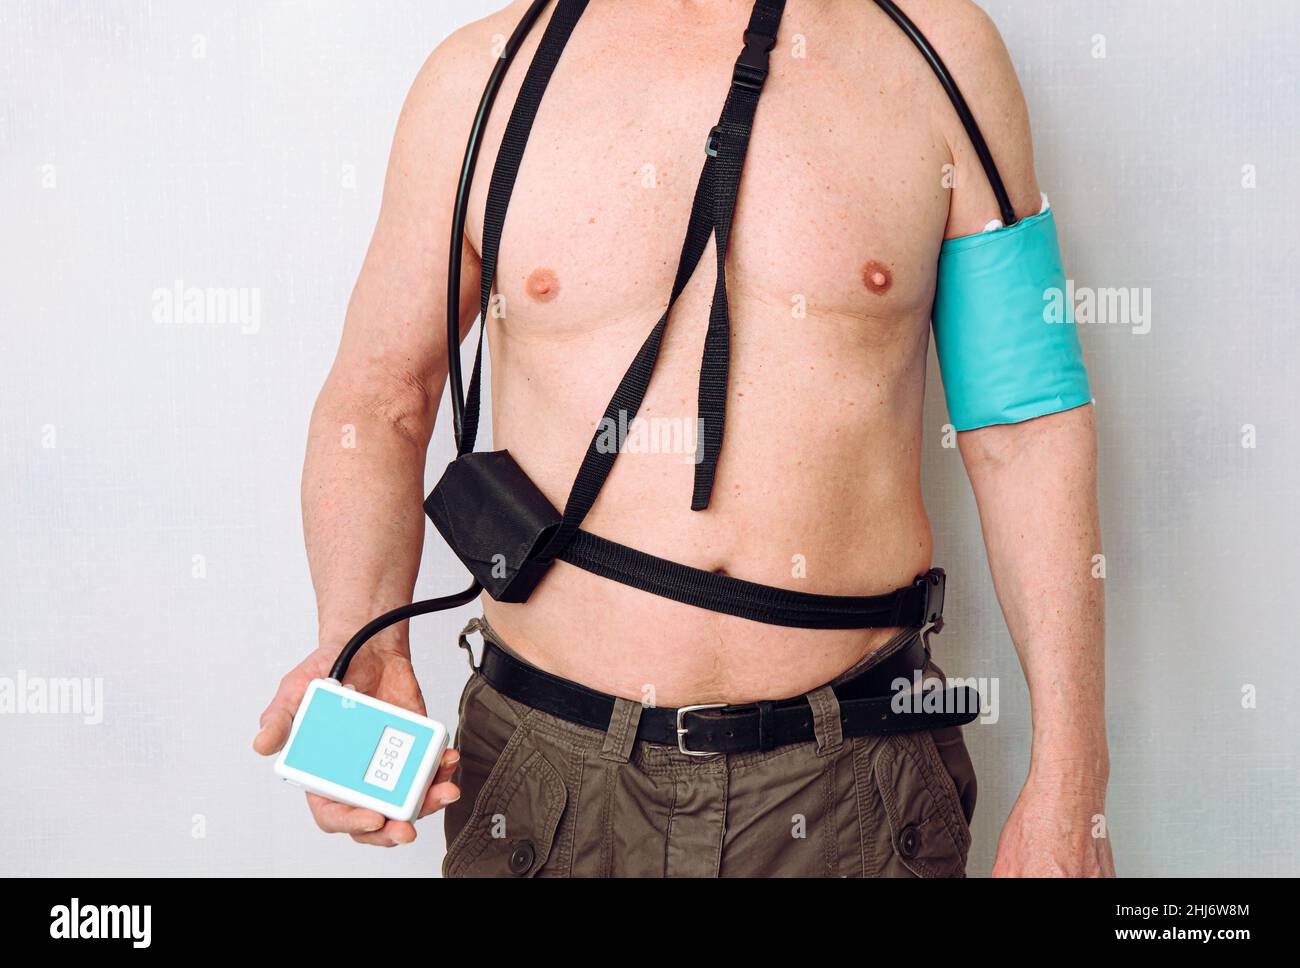 Corps d'un homme d'âge moyen utilisant un tensiomètre ambulatoire (ABPM) portatif pour prendre des mesures pendant les activités quotidiennes normales à la maison. Banque D'Images